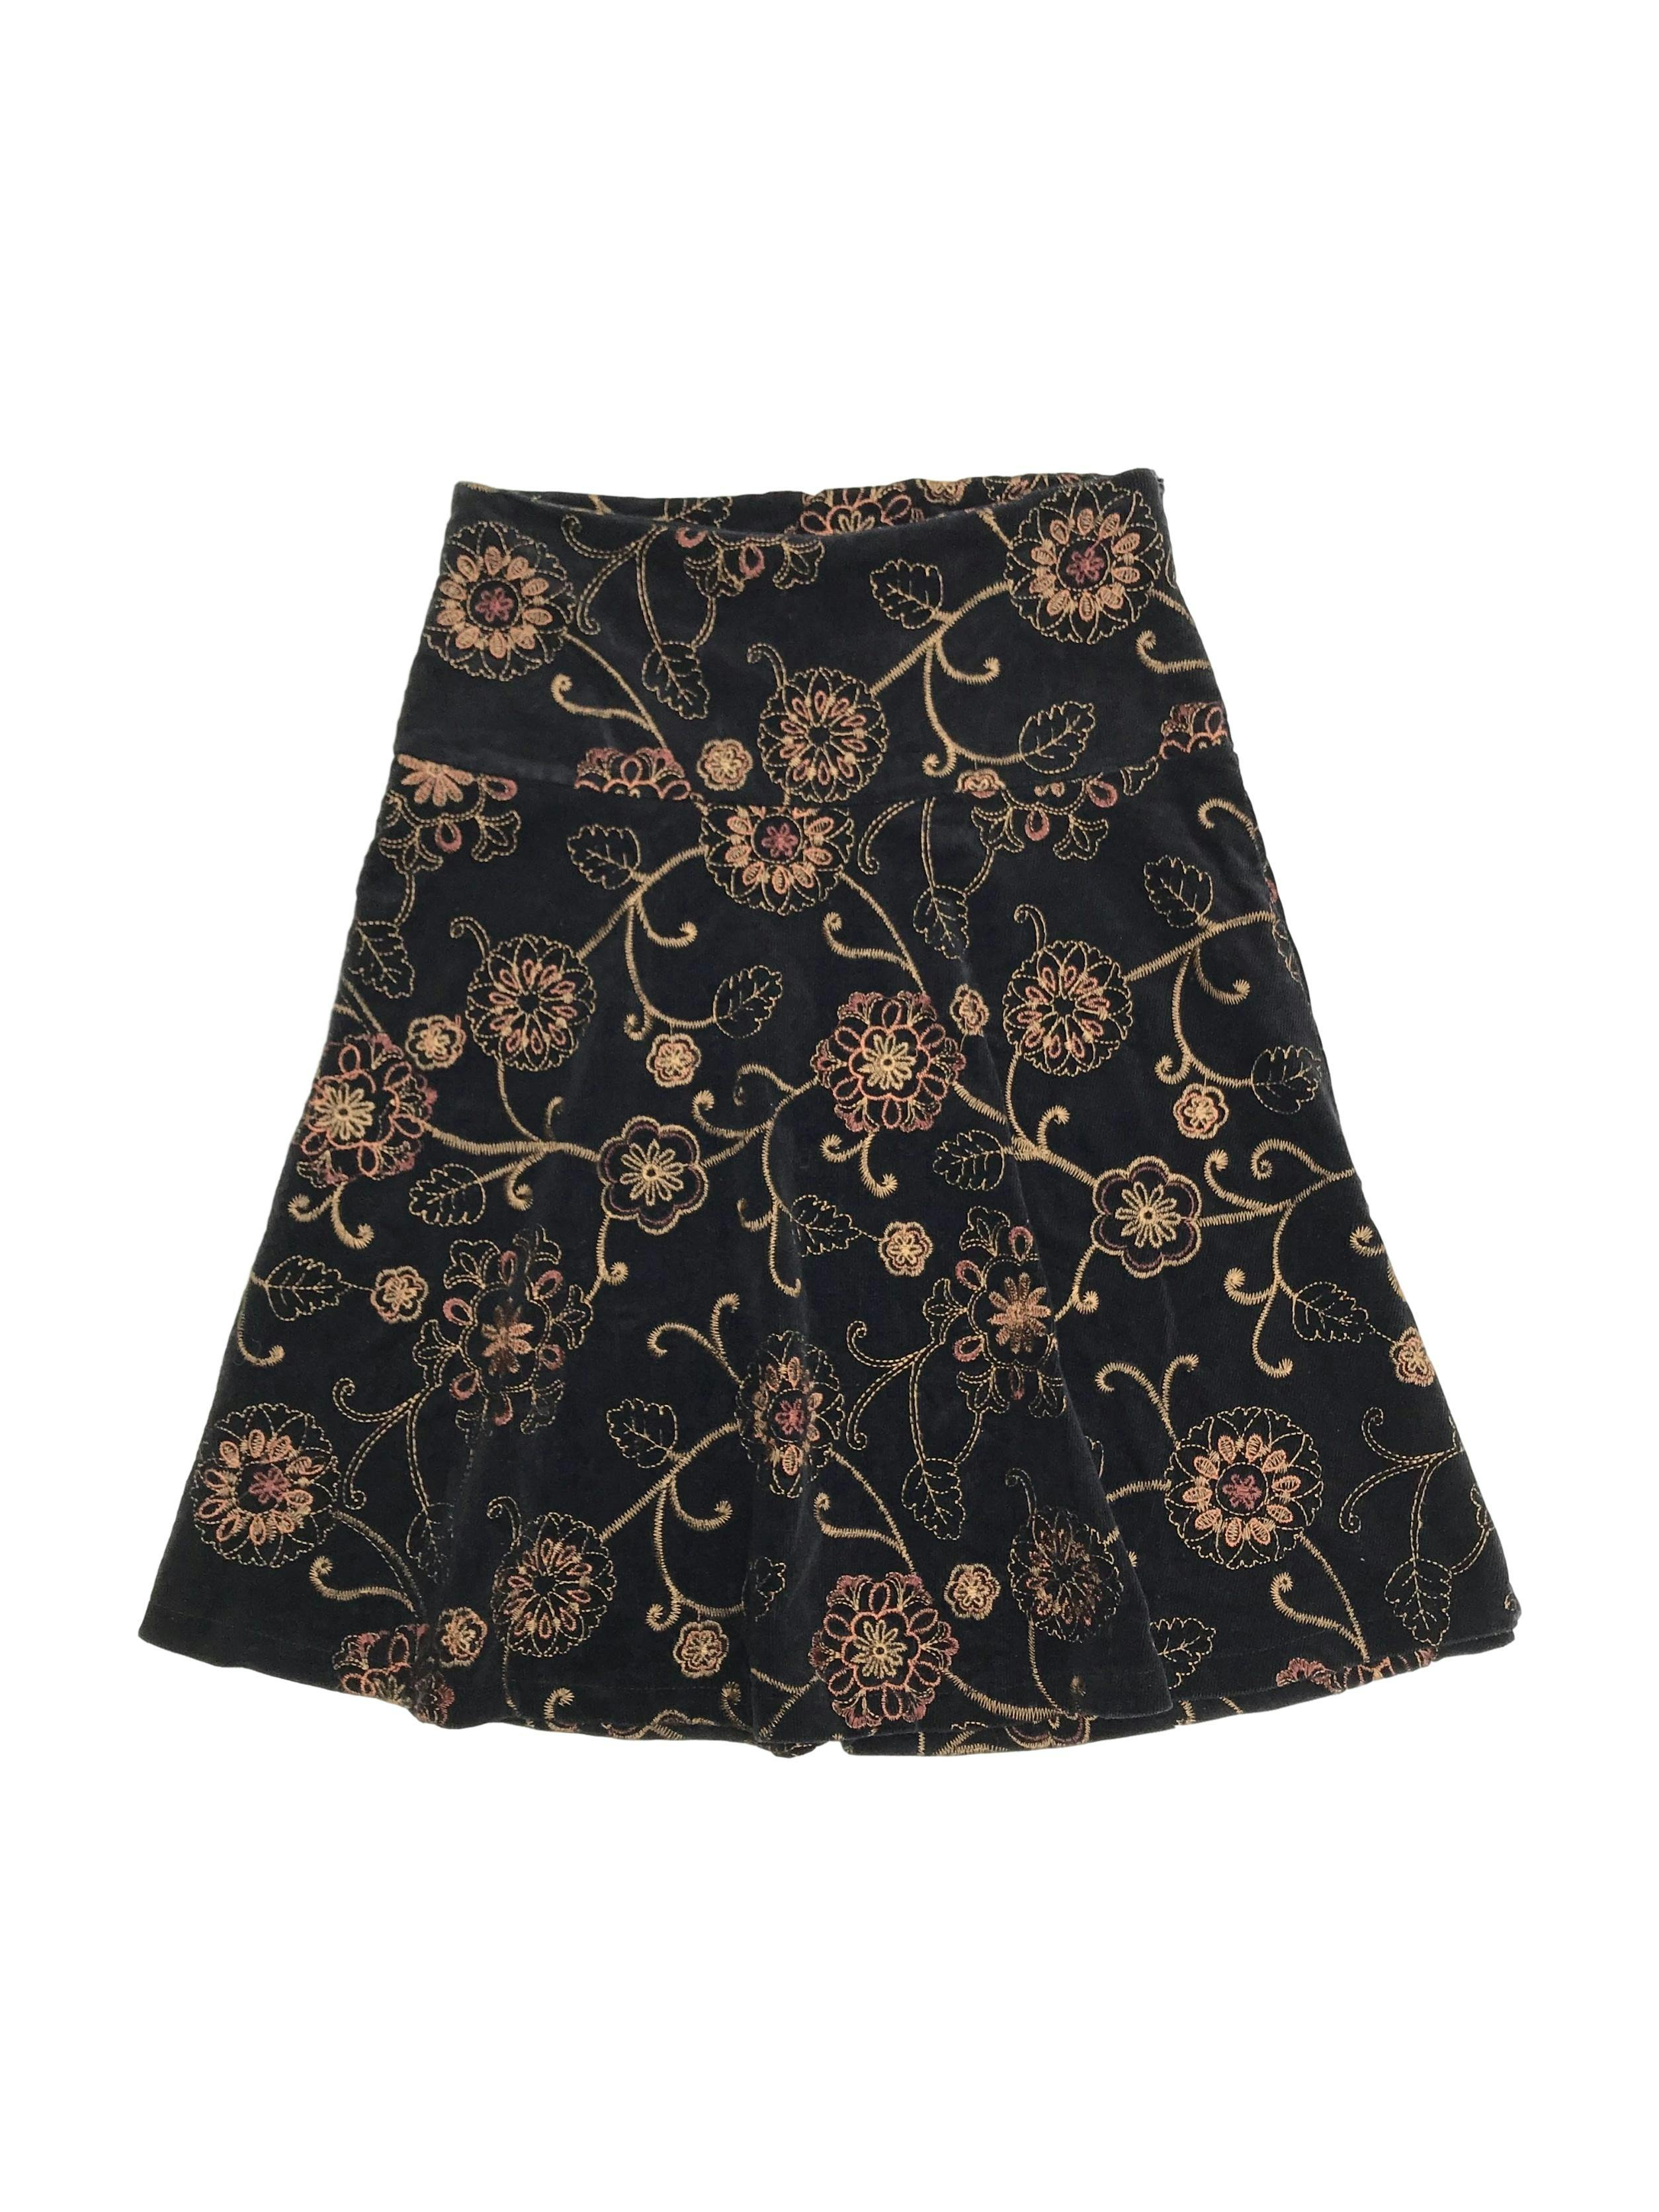 Falda de corduroy negro con bordado de flores doradas, falda en A, pretina ancha con cierre lateral. Largo 60cm
Talla S